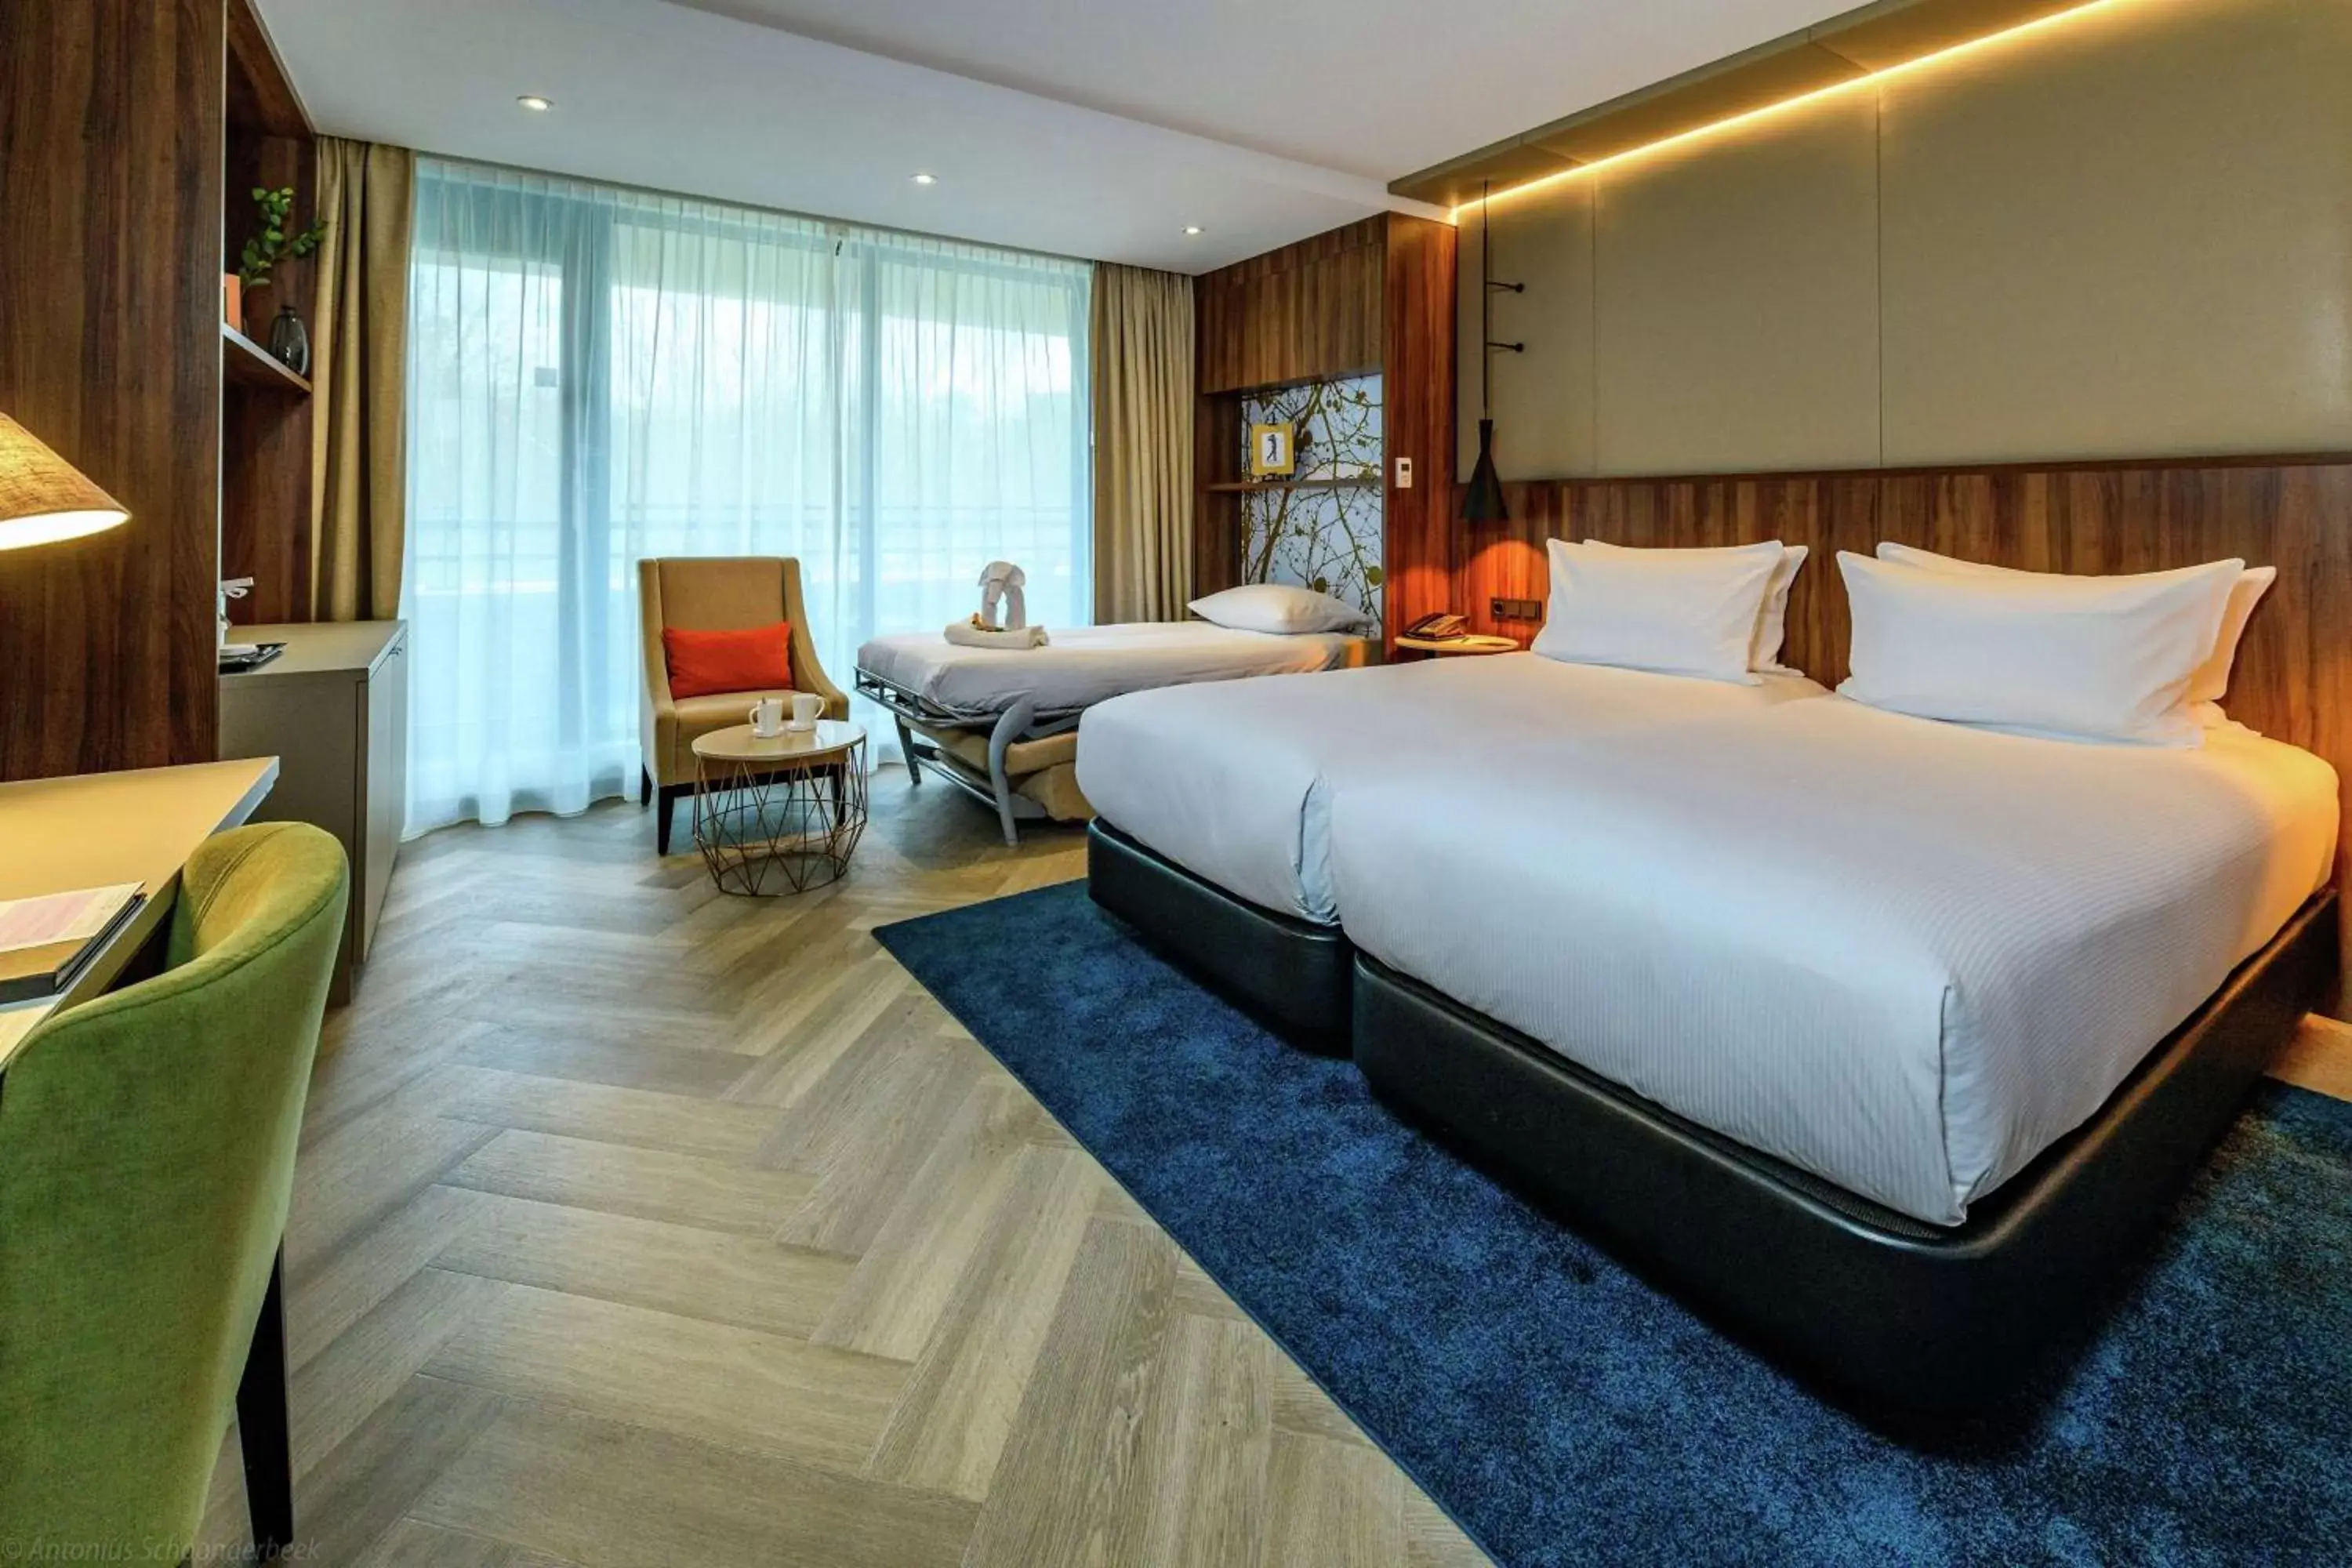 Bedroom in DoubleTree by Hilton Royal Parc Soestduinen